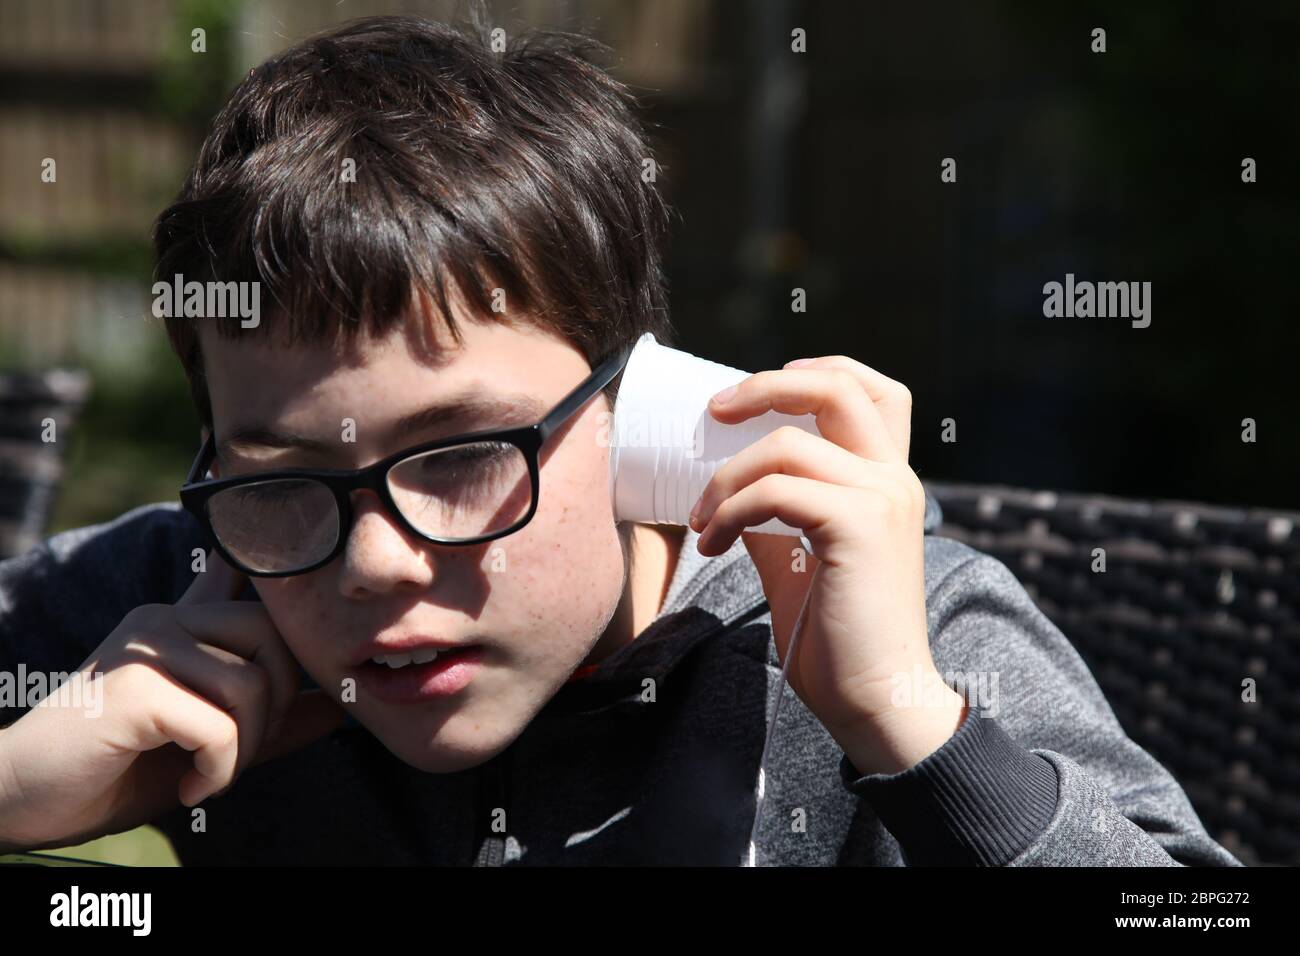 Junge hört mit einem Papptassentelefon aus Plastikbechern und Schnur experimentiert die Wissenschaft mit Schallwellen und Vibrationen Stockfoto